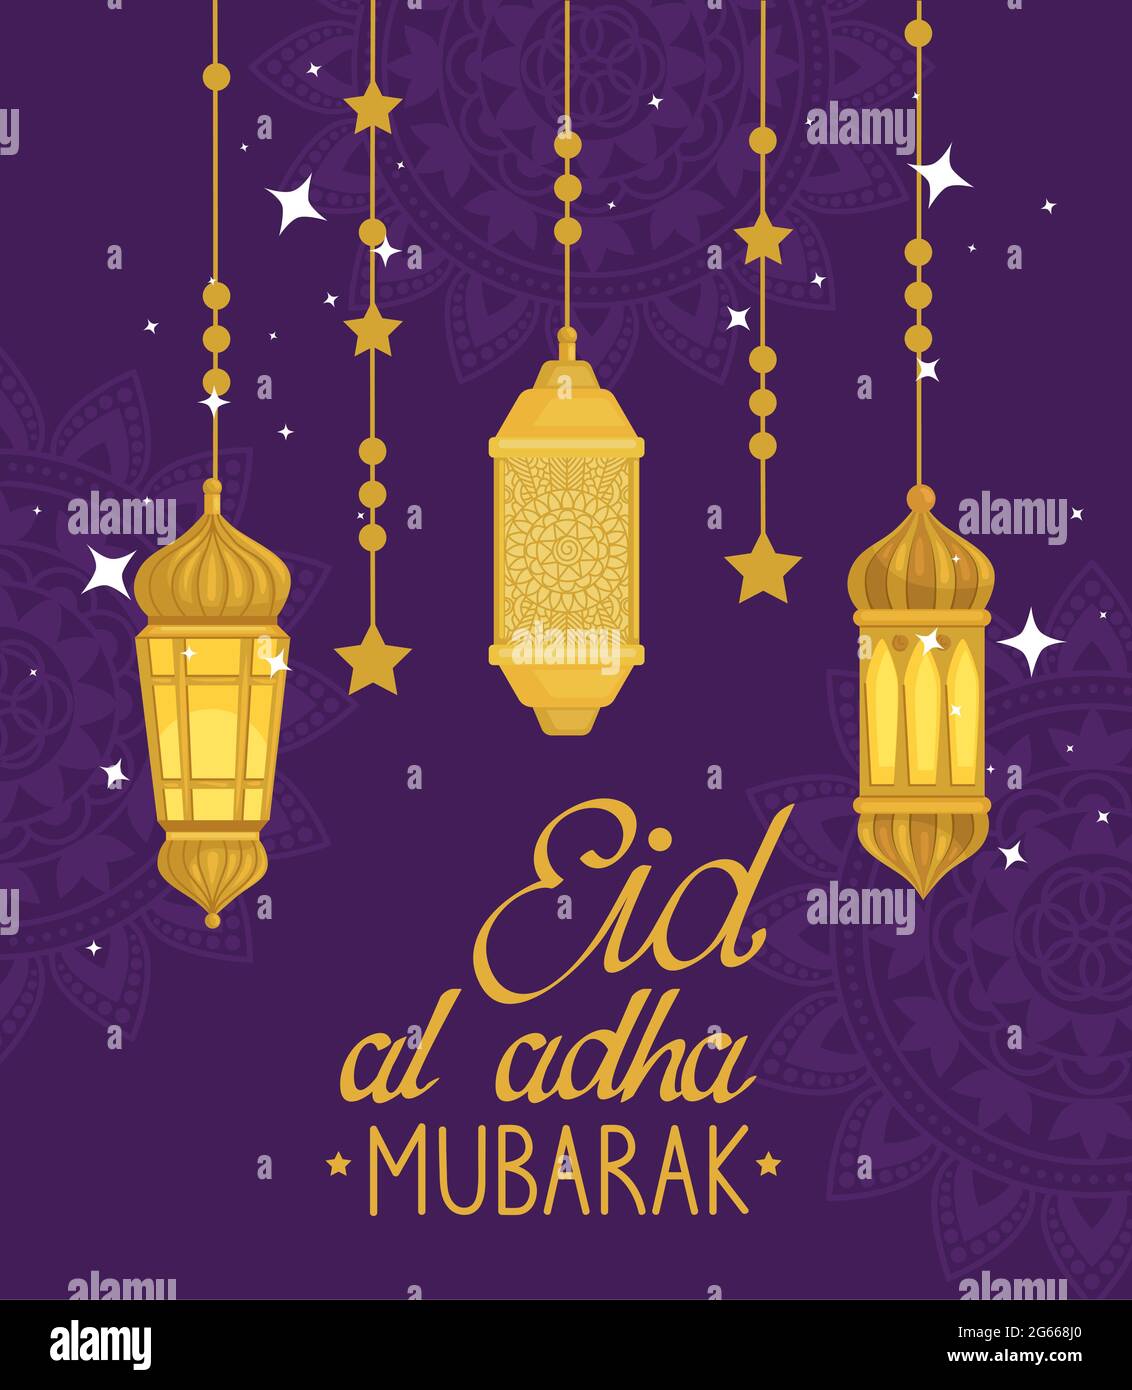 Eid al adha mubarak lámparas de oro colgando Ilustración del Vector